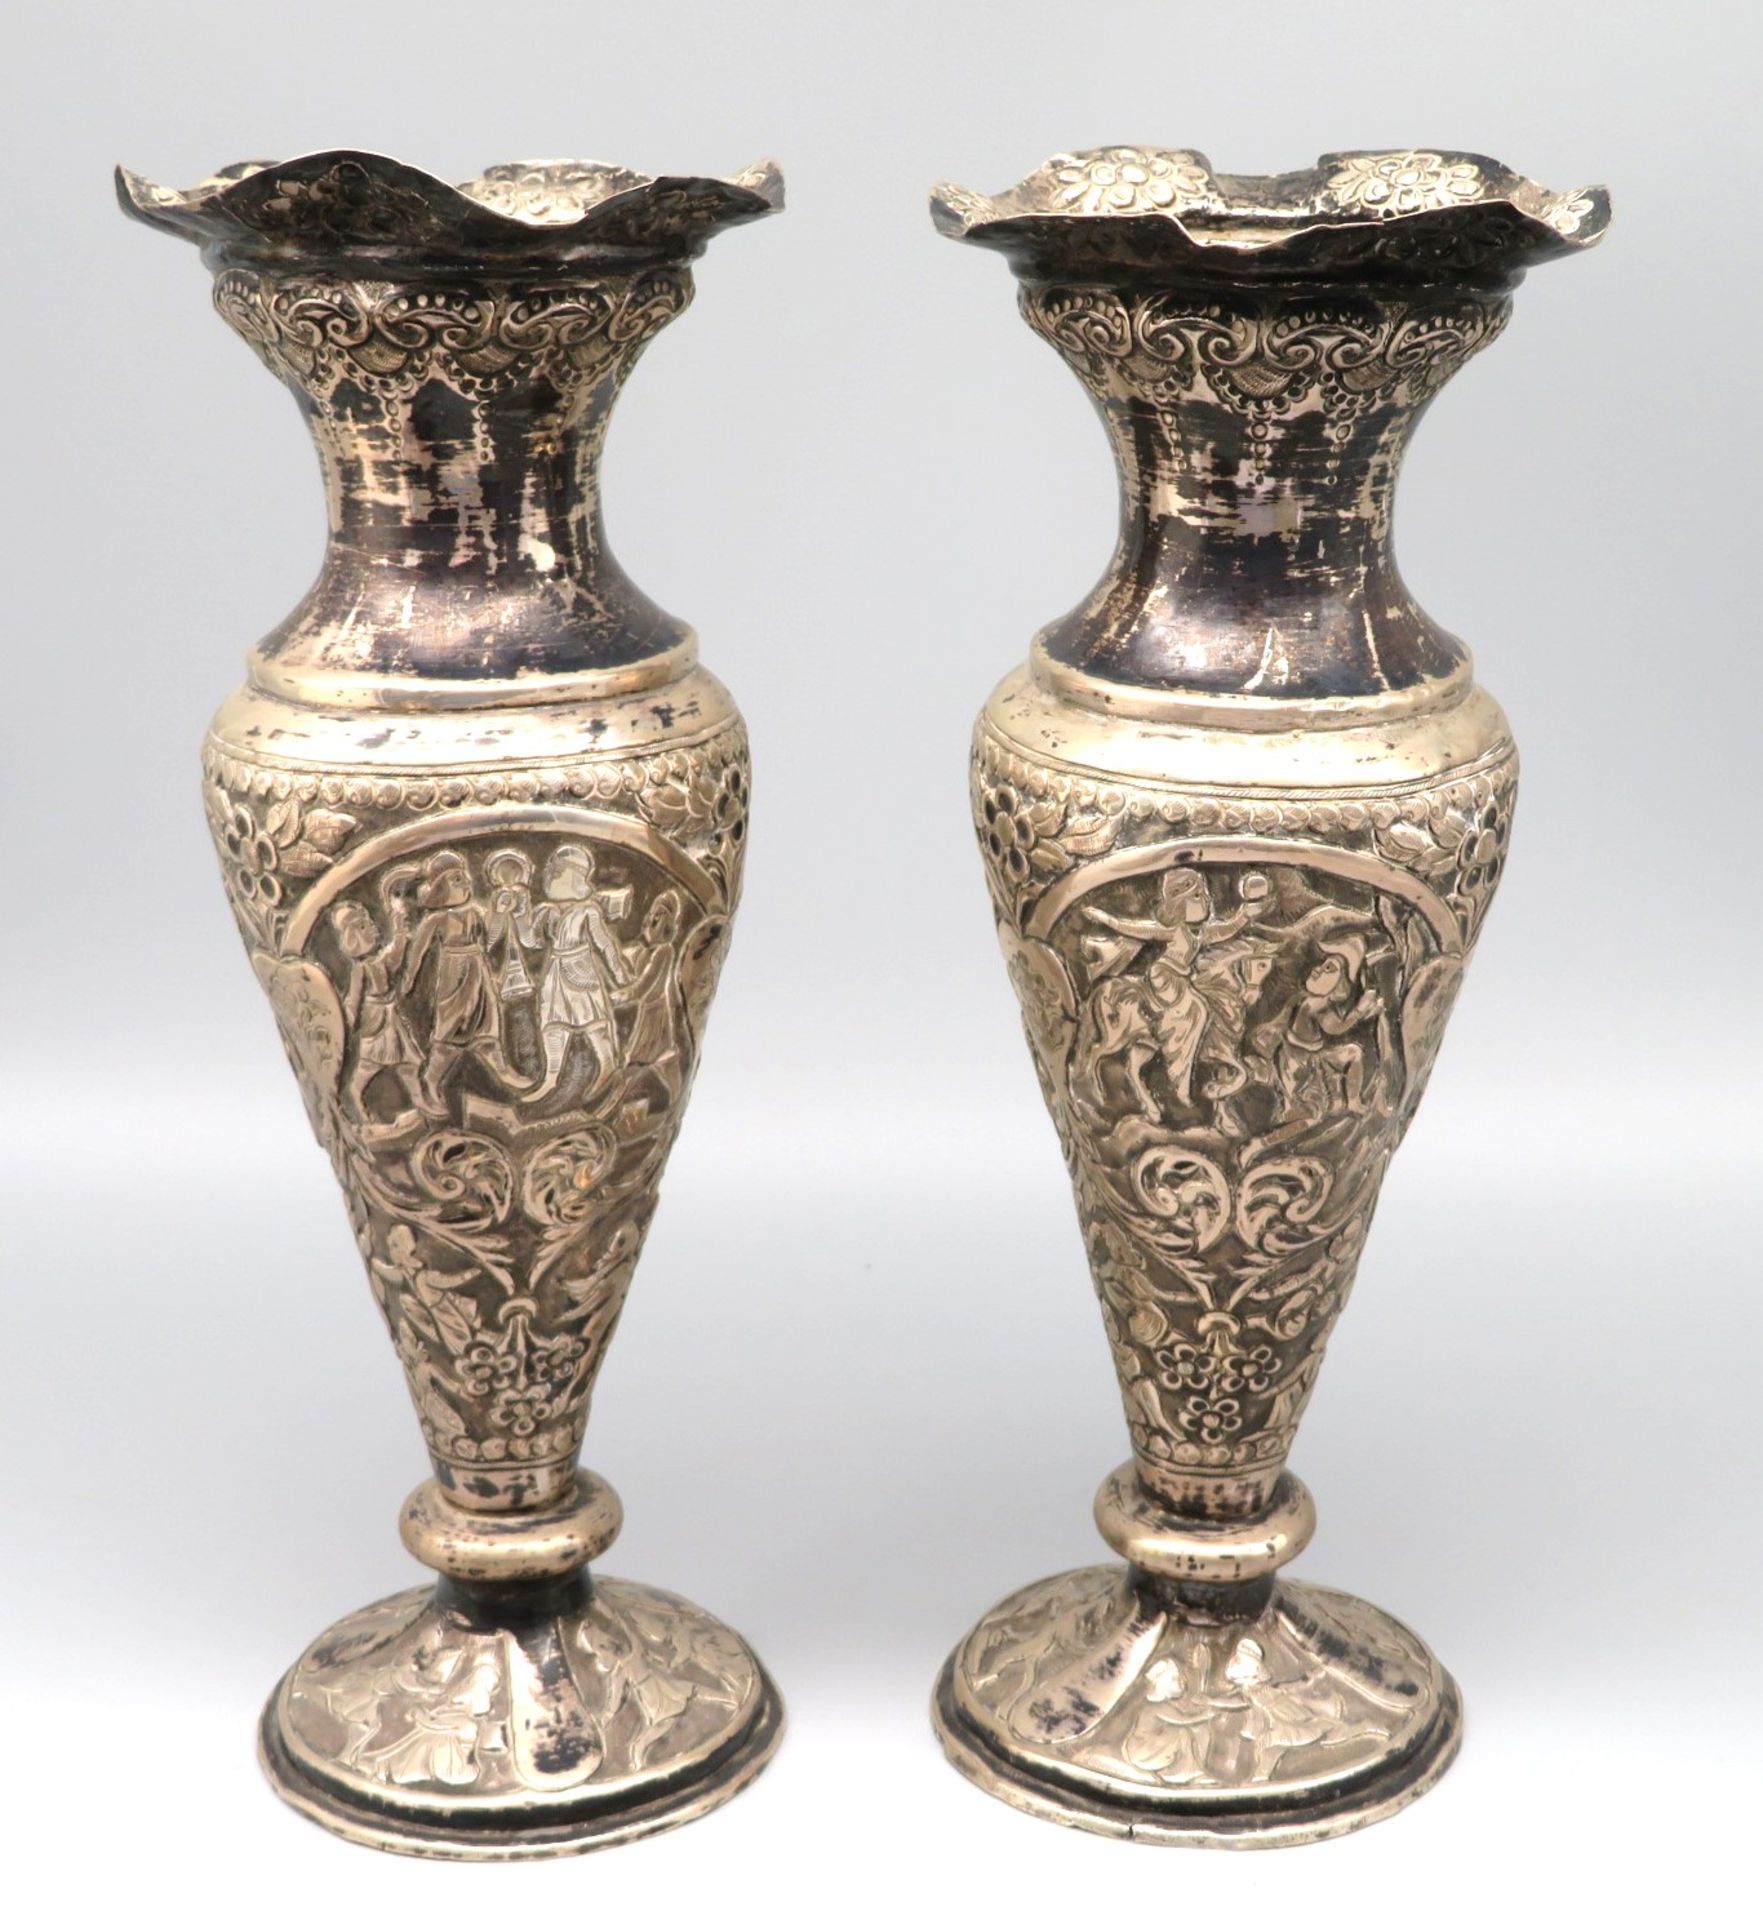 2 Vasen, wohl Persien, 19. Jahrhundert, reicher umlaufender Reliefdekor in floralem und geometrisch